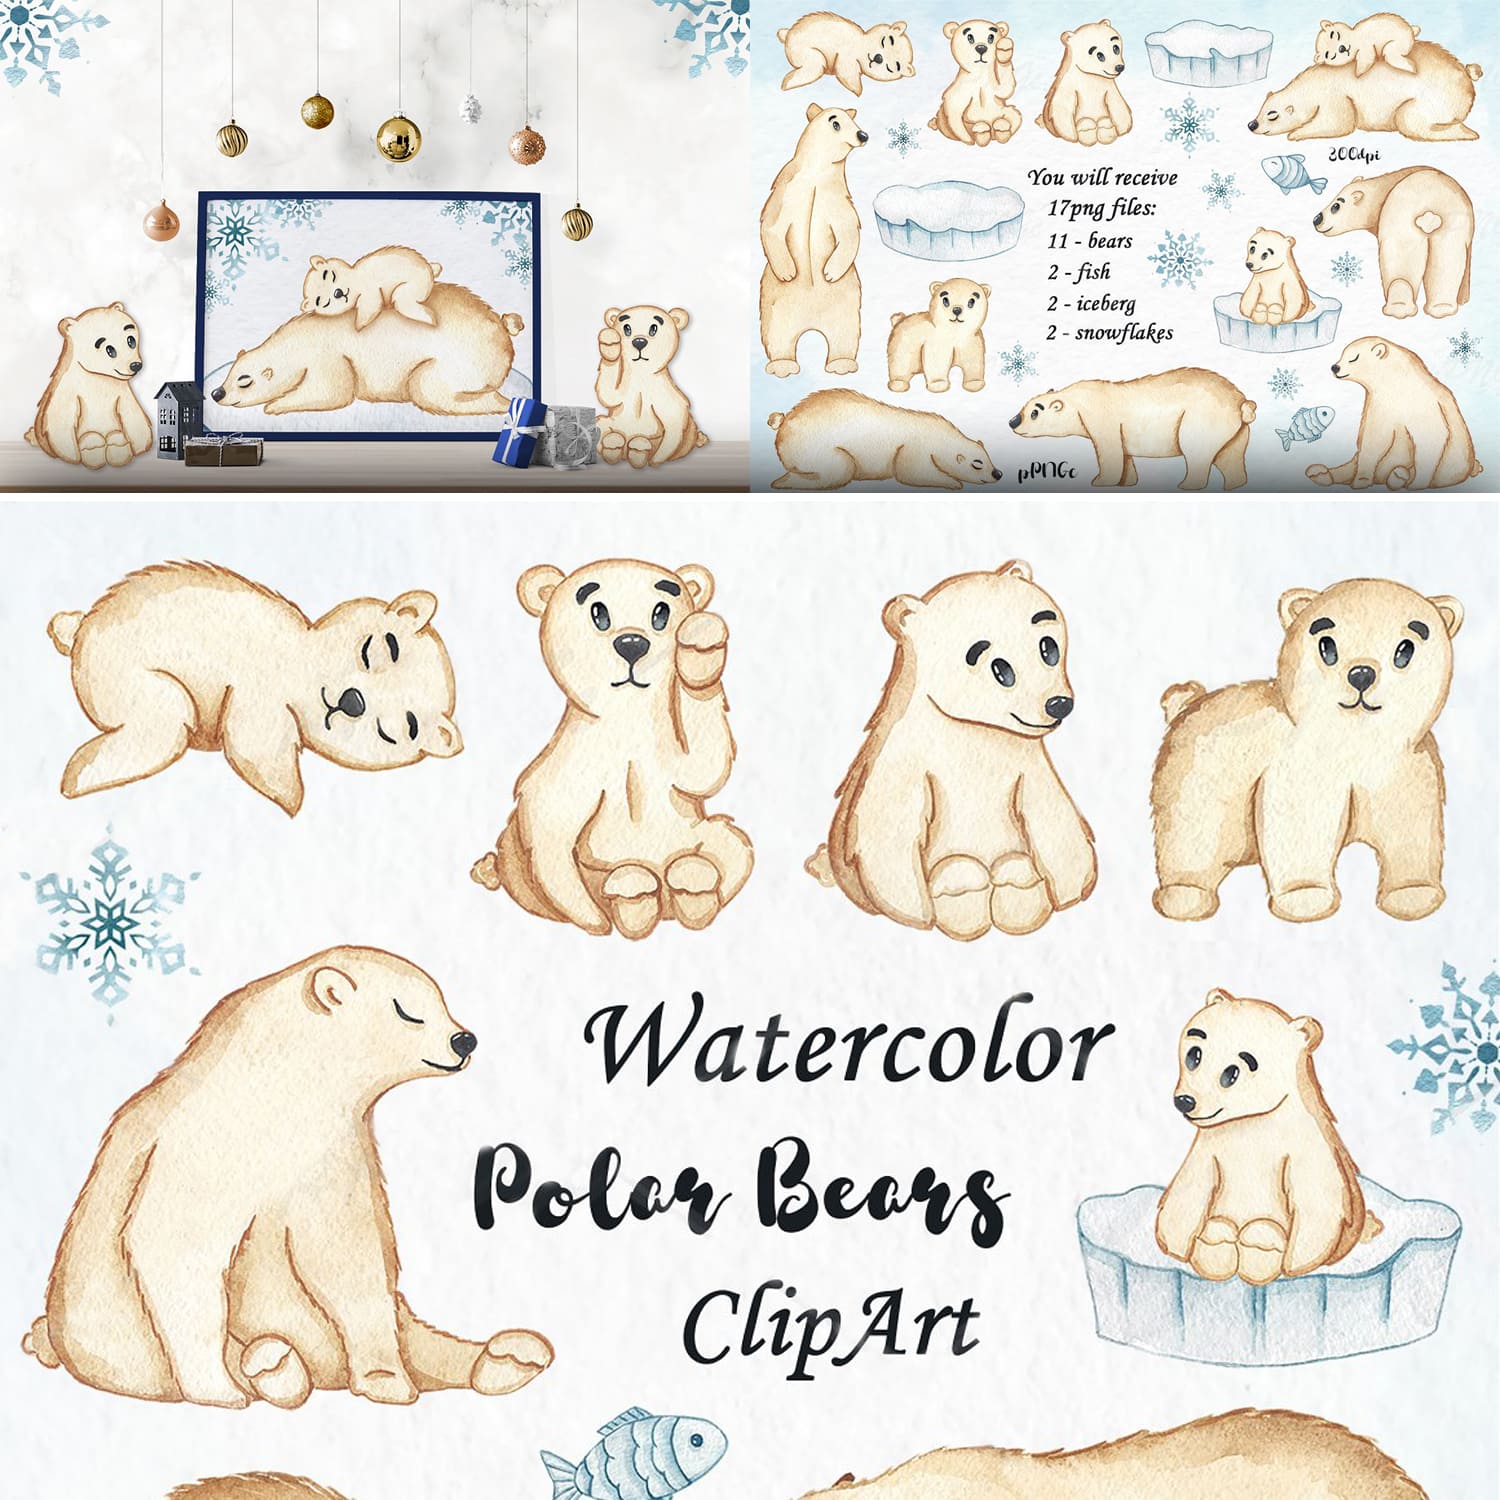 Watercolor Polar Bears Clipart cover.